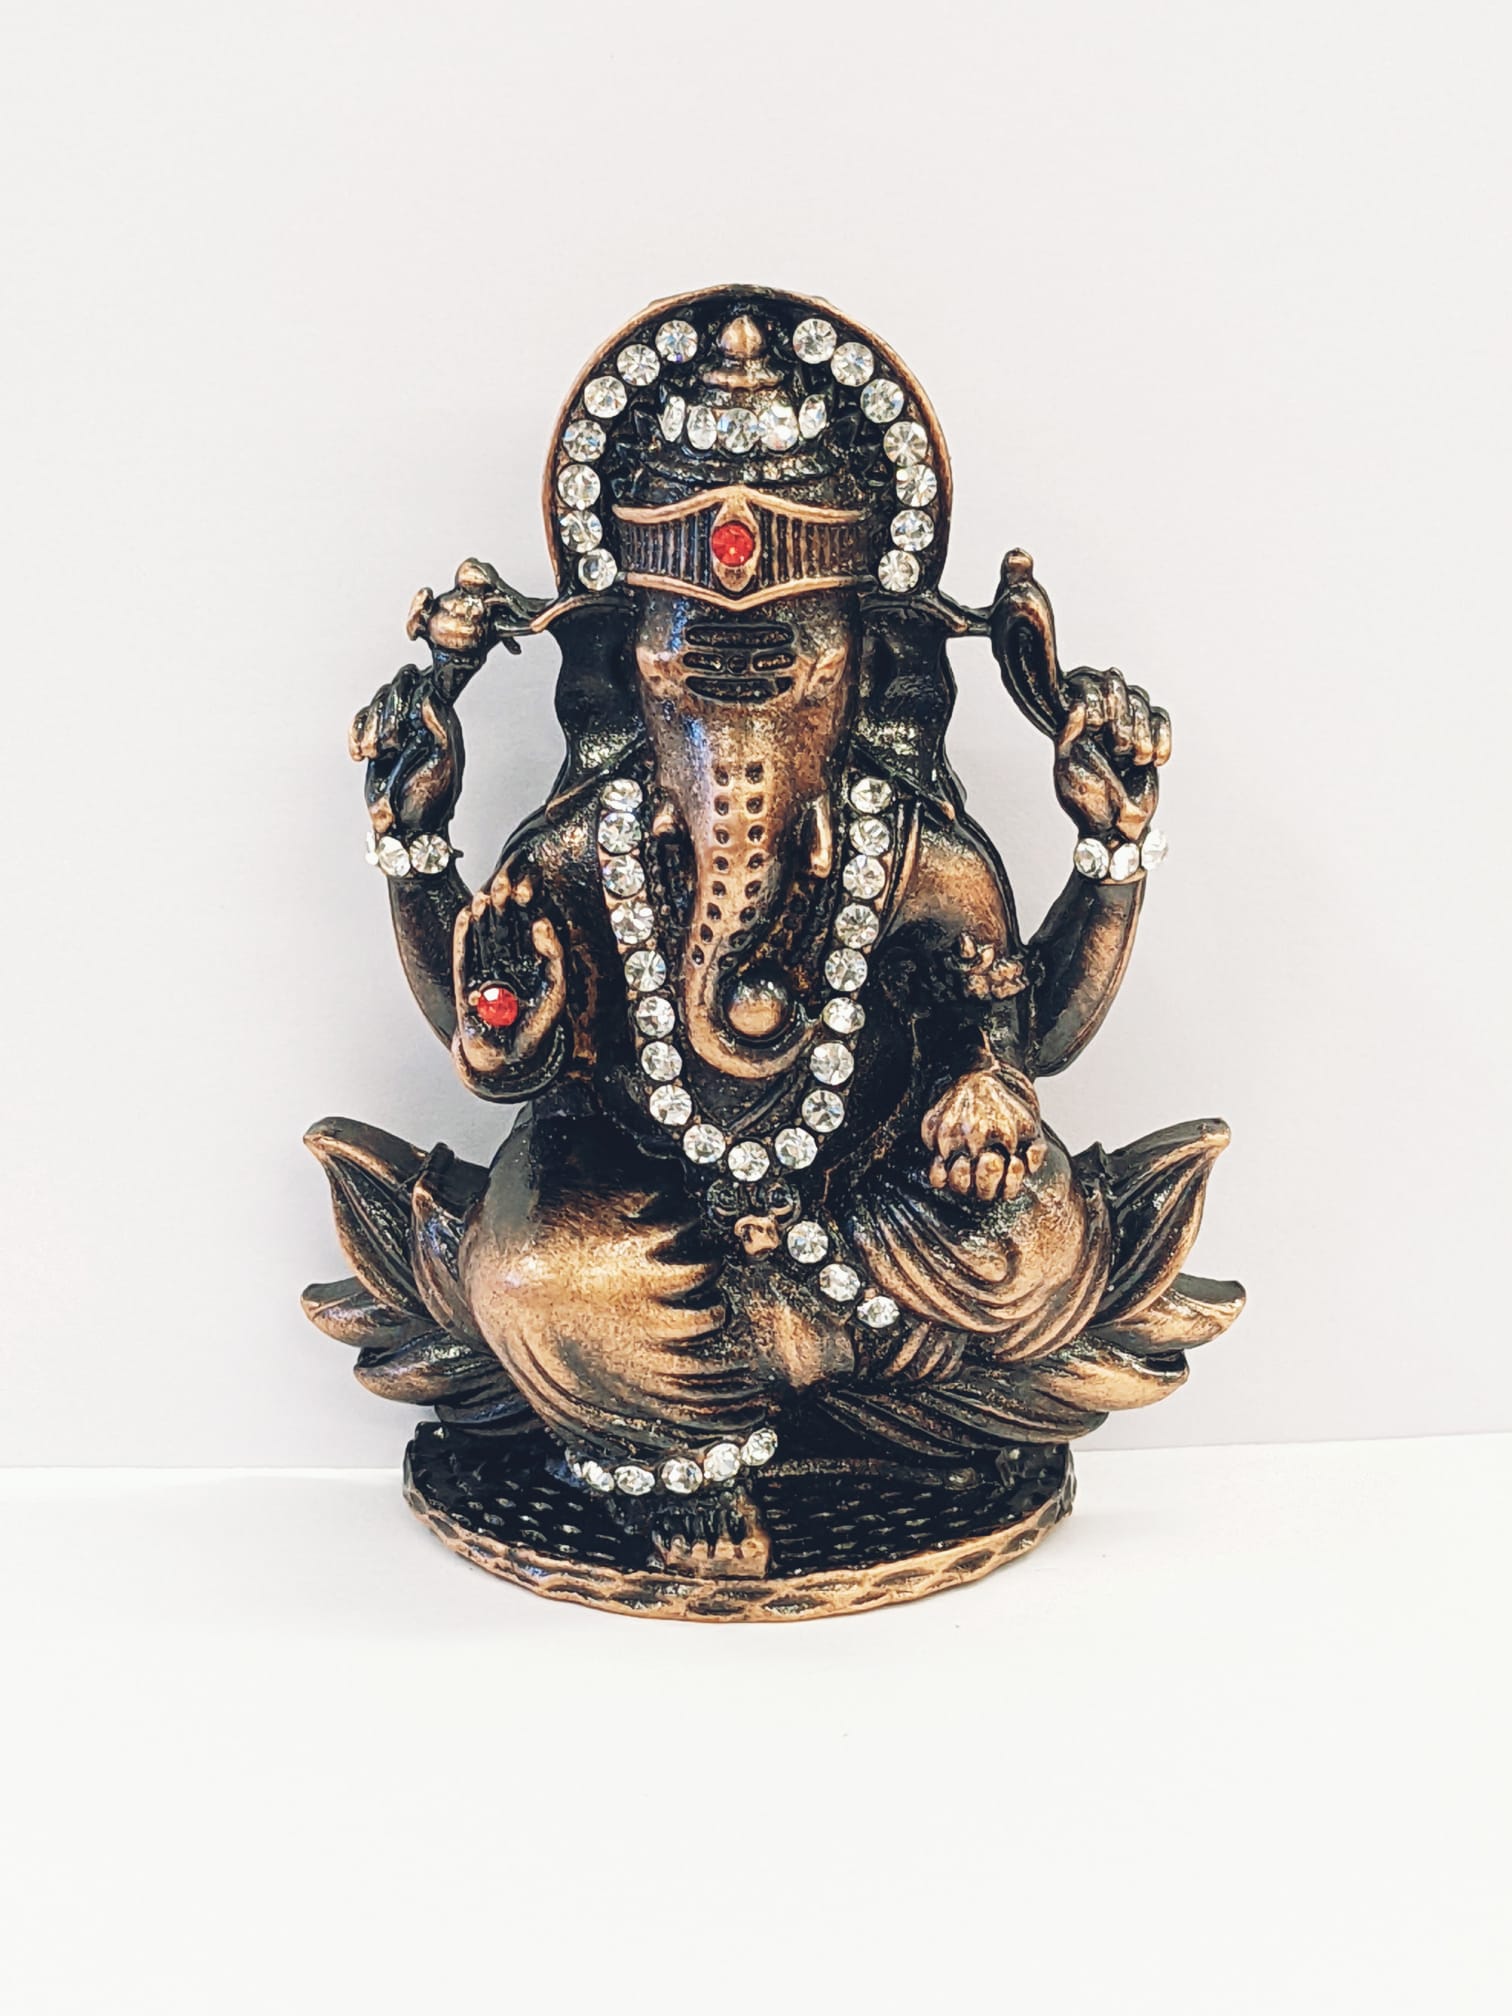 Image of a copper shaded Car dashboard Idol of Lord Ganesha